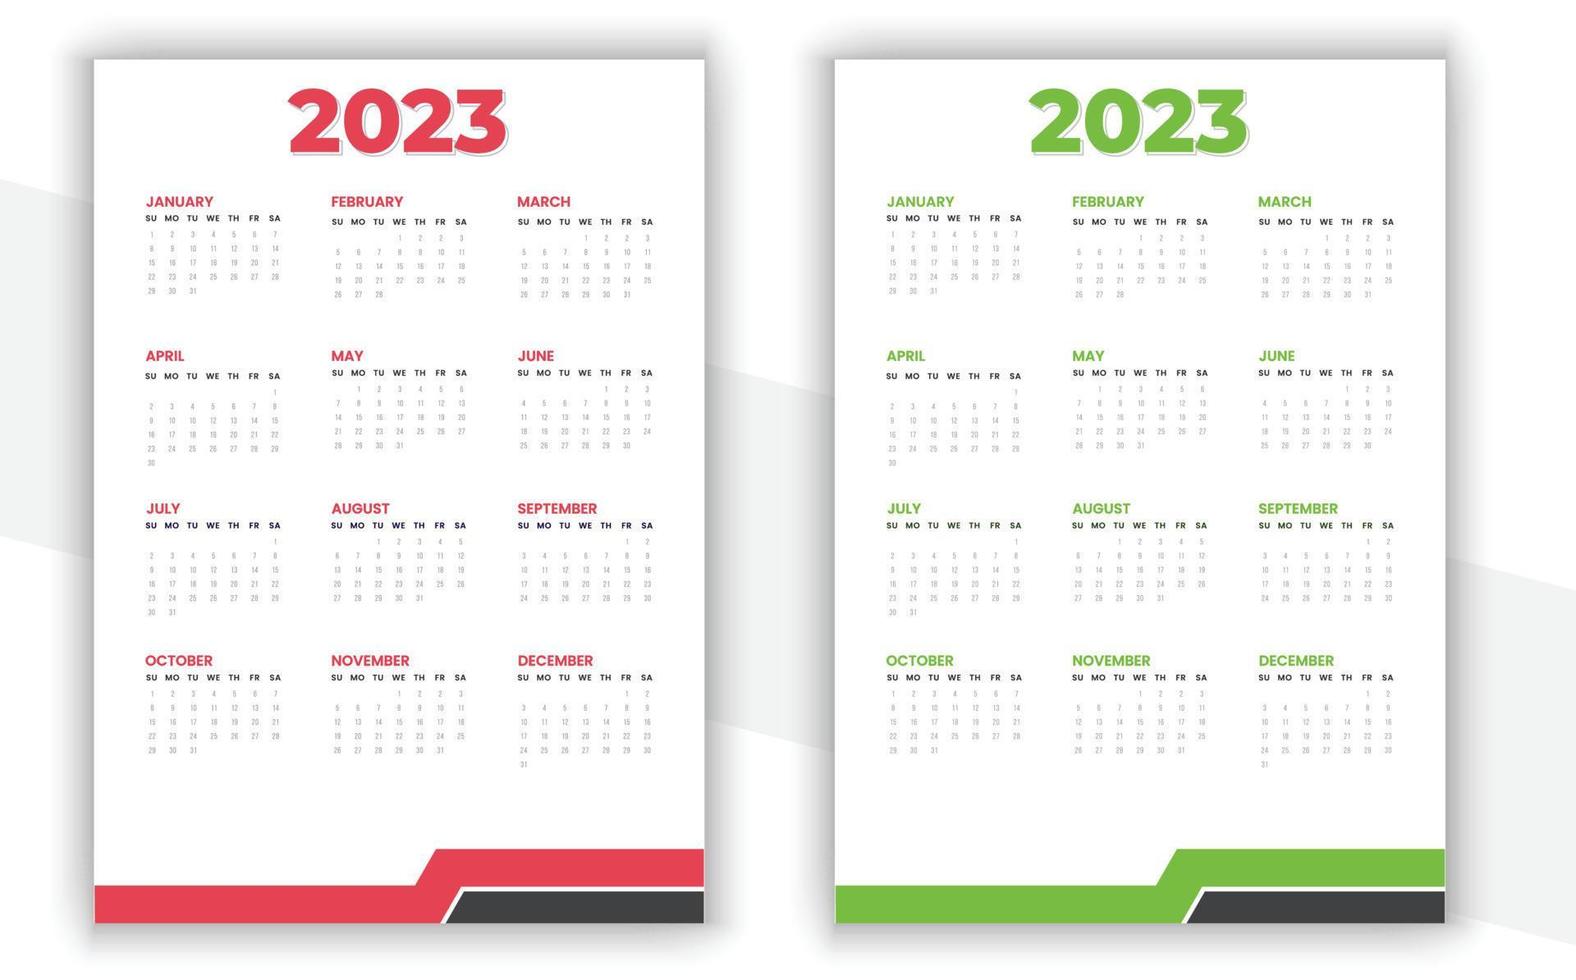 diseño de calendario de pared 2023 vector